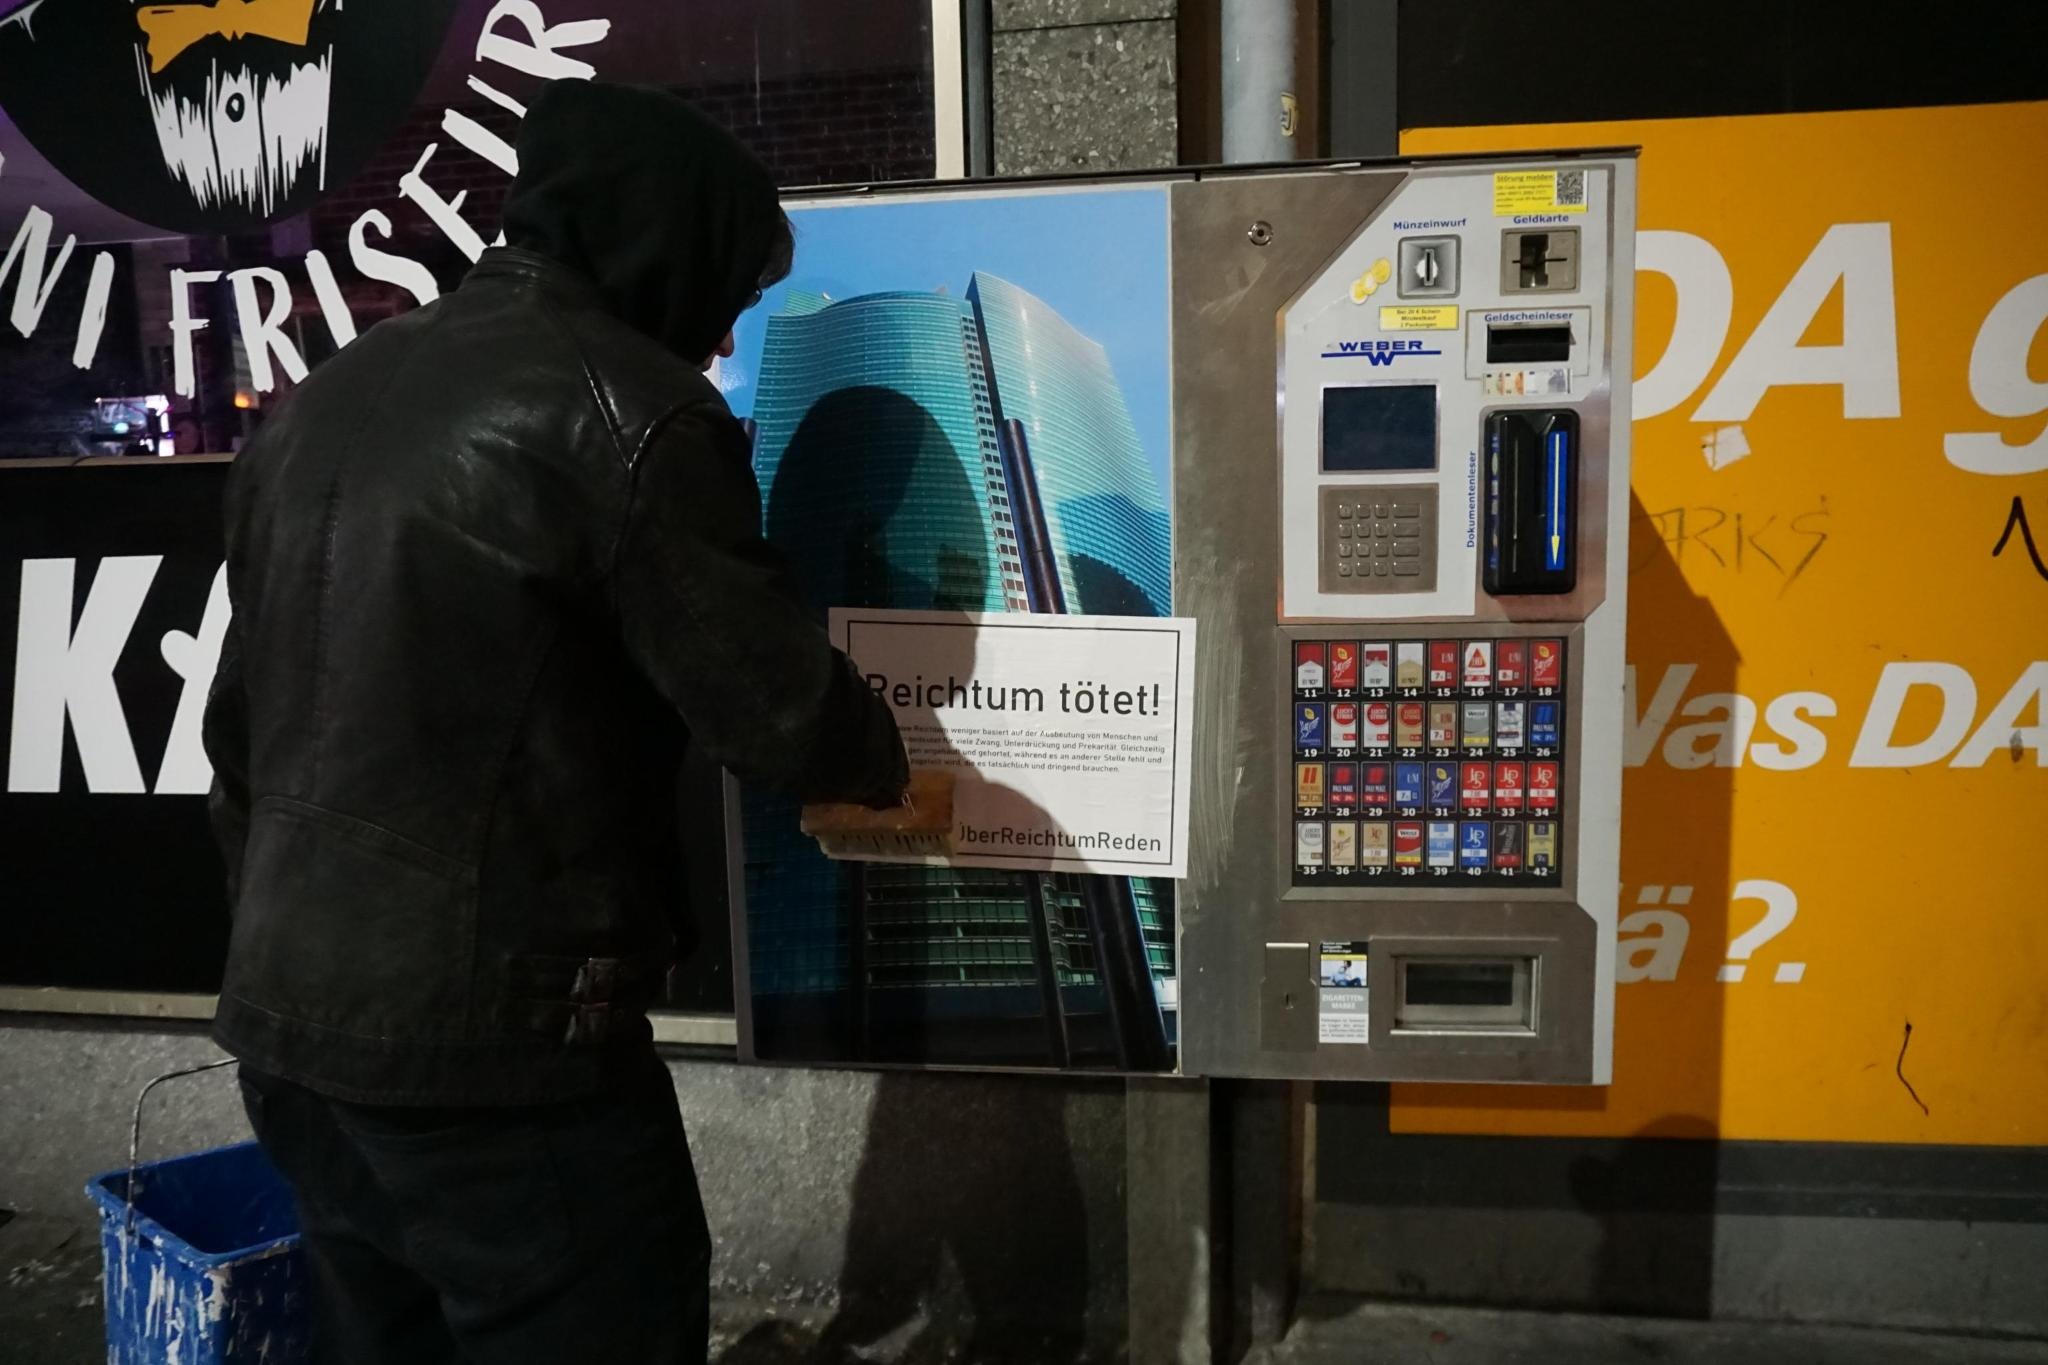 Ein schwarz gekleideter Aktivist klebt ein Plakat mit dem Slogan "Reichtum tötet" an einen Zigarettenautomaten.